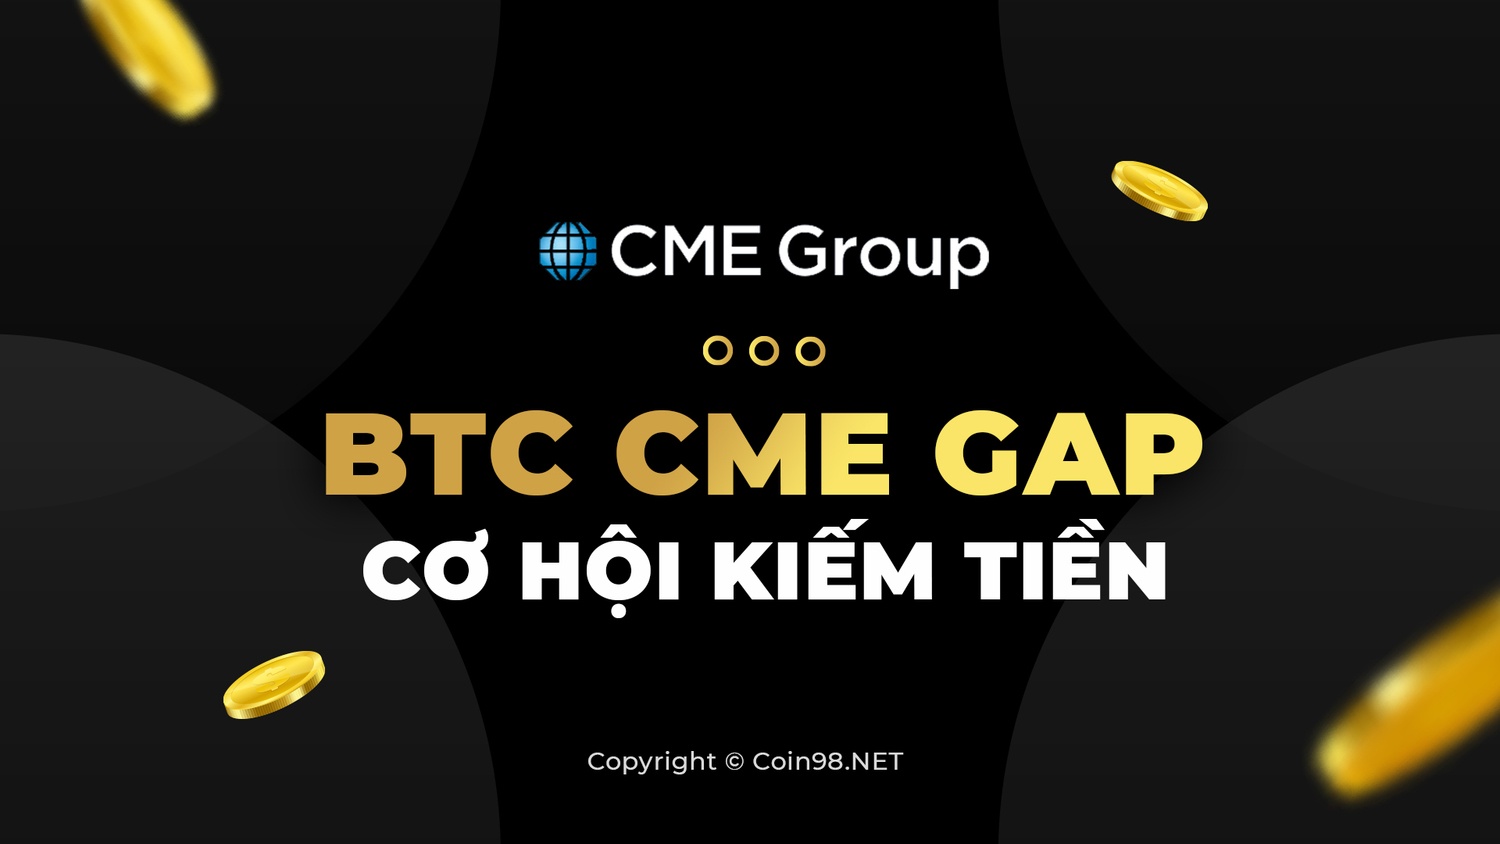 CME Gap là gì?
